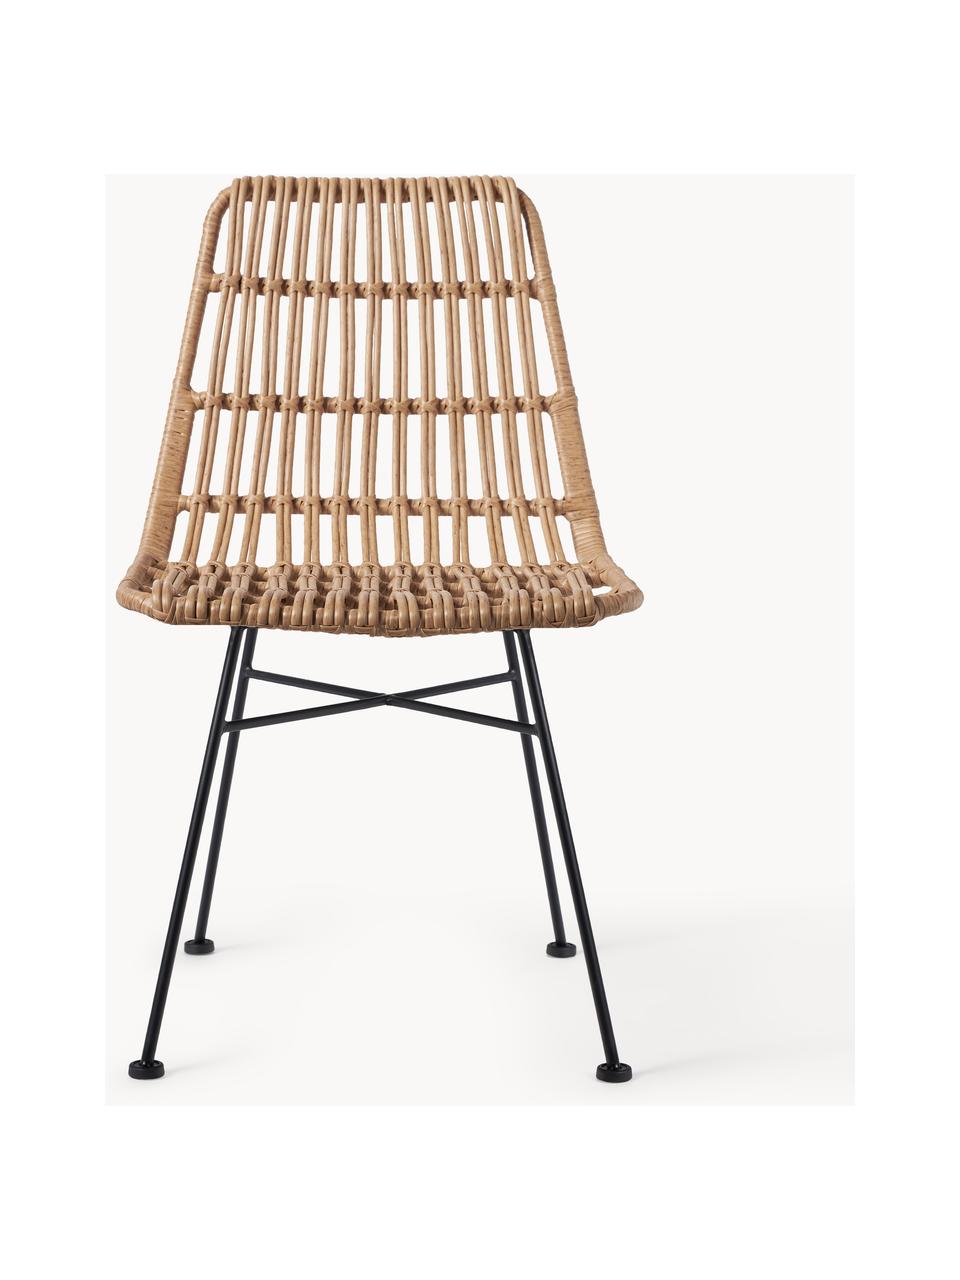 Polyrotan stoelen Costa, 2 stuks, Zitvlak: polyethyleen vlechtwerk, Frame: gepoedercoat metaal, Lichtbruin, zwart, B 47 x D 61 cm